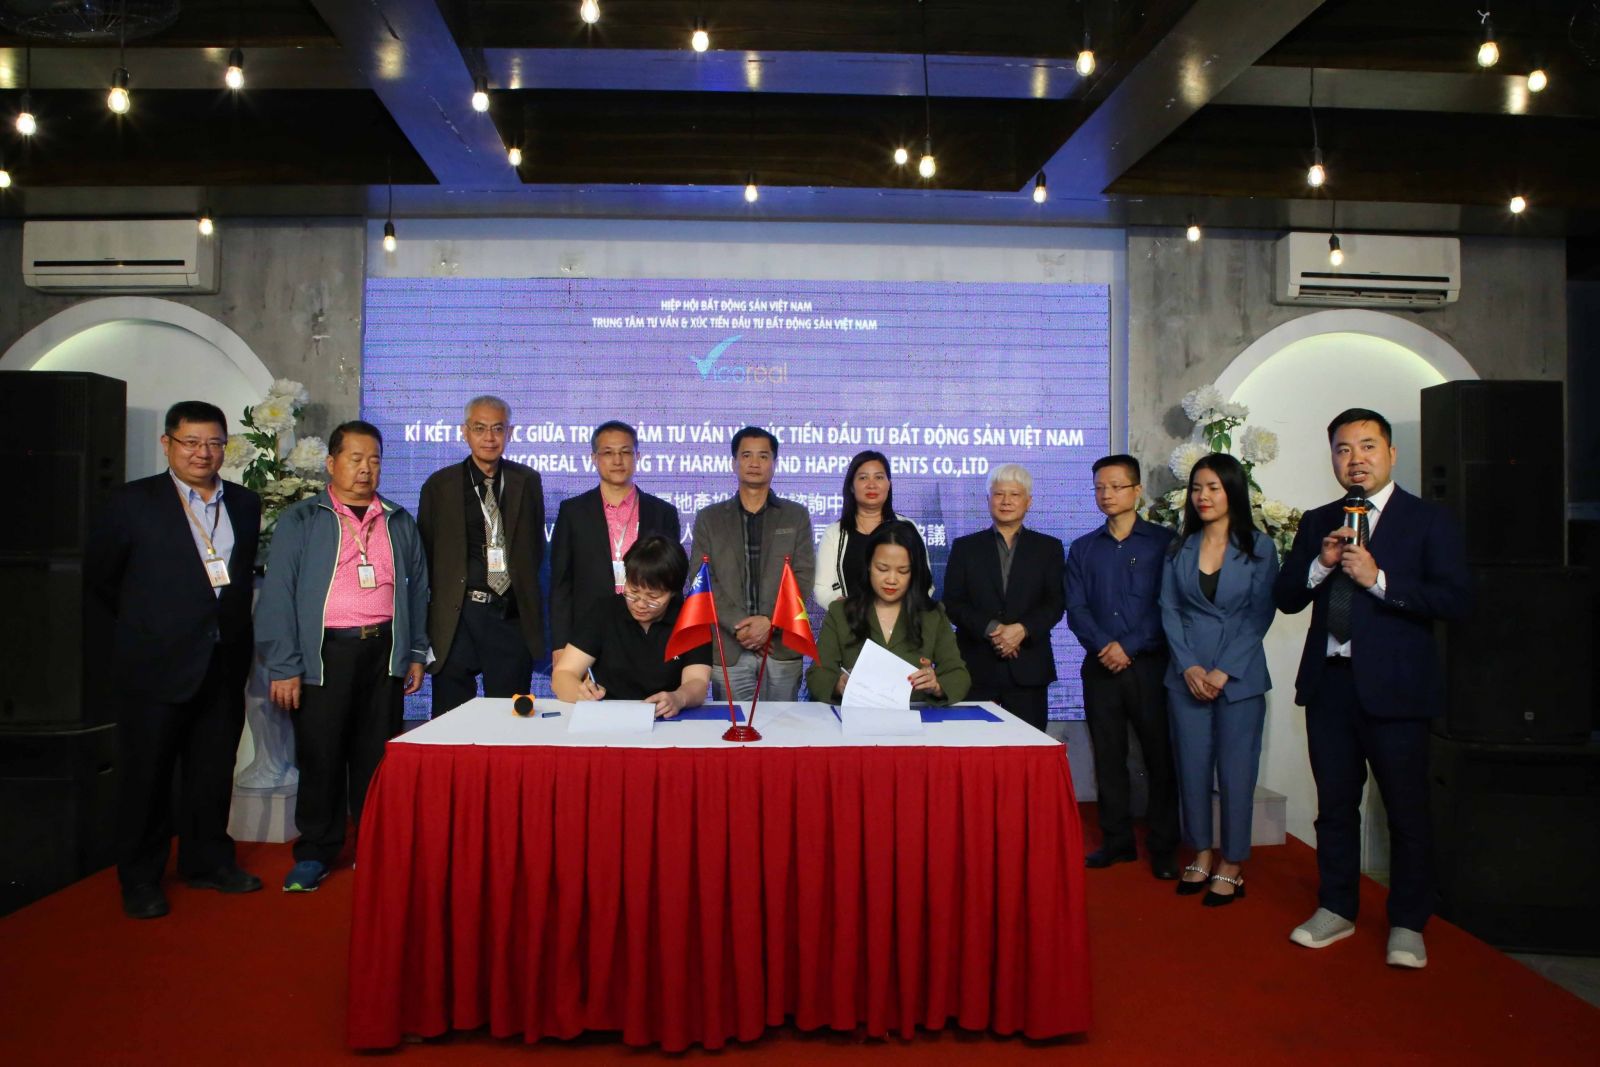 Trung tâm Tư vấn và Xúc tiến Đầu tư Bất động sản Việt Nam kí thỏa thuận hợp tác với Công ty Harmony and Happy Talents- Ảnh 3.